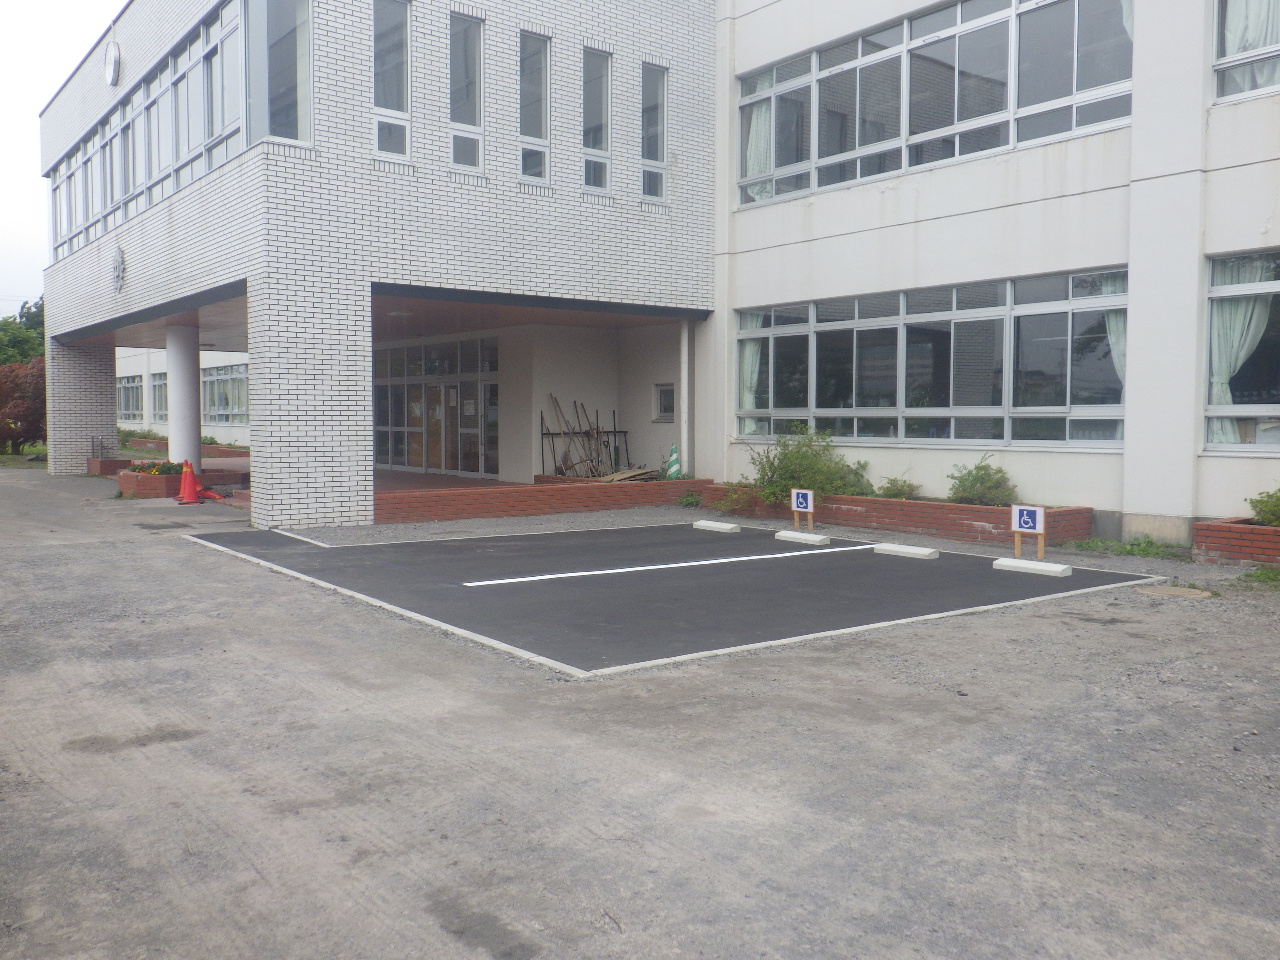 伊達中学校の身障者用駐車場を整備しました 株式会社 永井組 北海道伊達 市で公共事業をはじめ 各種土木工事 管工事 水道施設工事の請負 維持管理を行っております